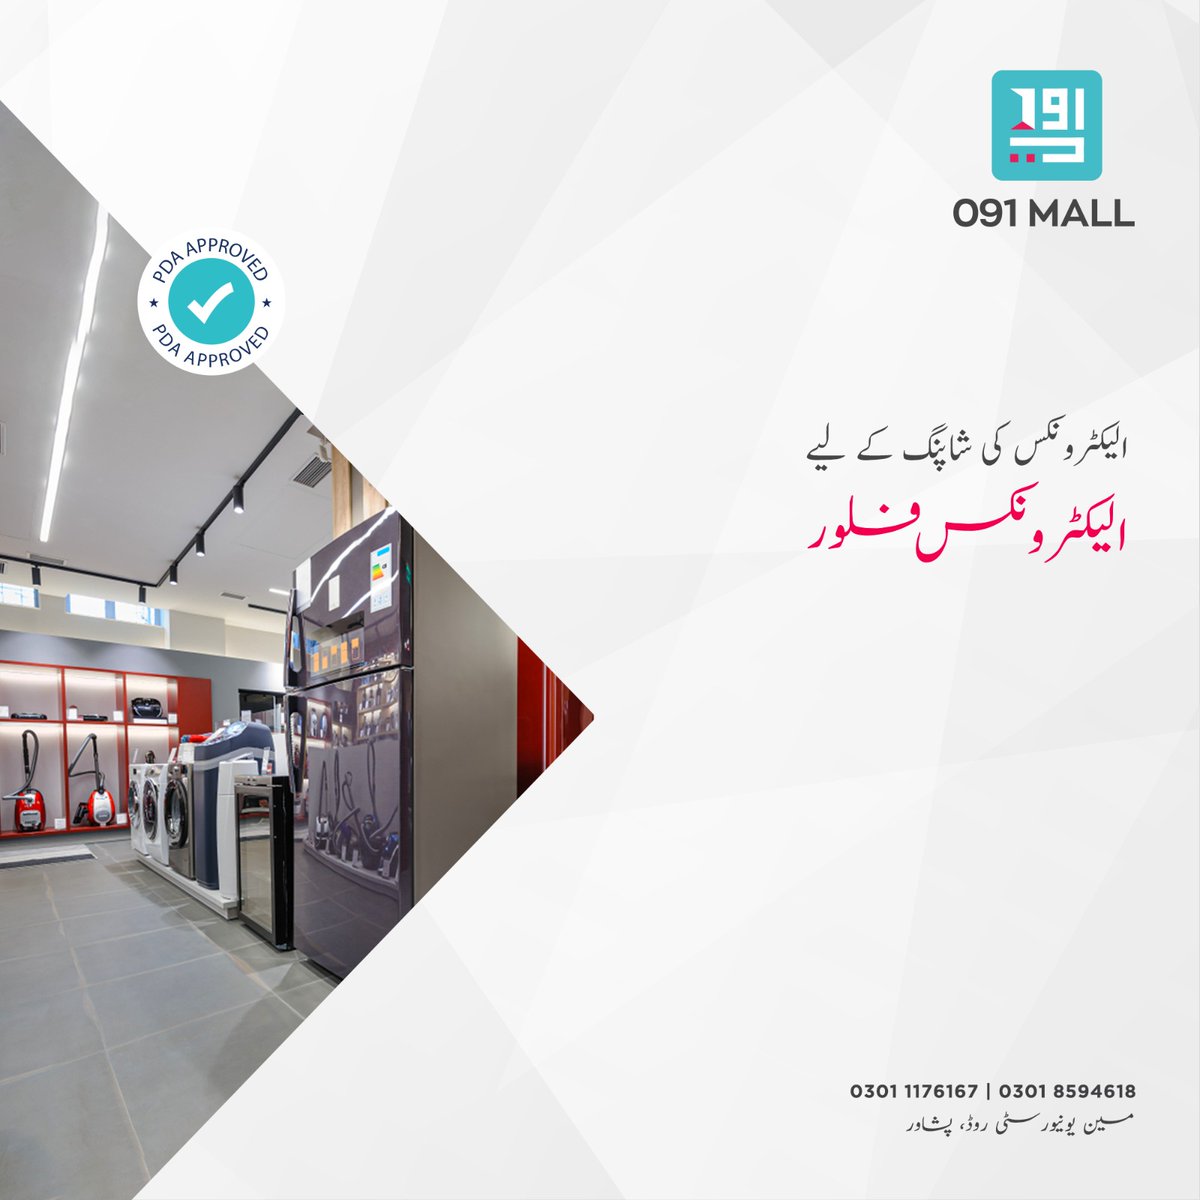 کیا آپ بھی خریدنا چاہتے ہیں الیکٹرونکس  کی ہر ورائٹی وہ بھی ایک ہی جگہ سے تو مال آف ہنگو کا الیکڑونکس فلور ہے خاص آپ کے لیے۔ جہاں ملے گی آپ کو الیکٹرانک اشیاء کی ہر ورائٹی۔

#091Mall #ShoppingMall #UniversityRoadPeshawar #peshawar #KPK